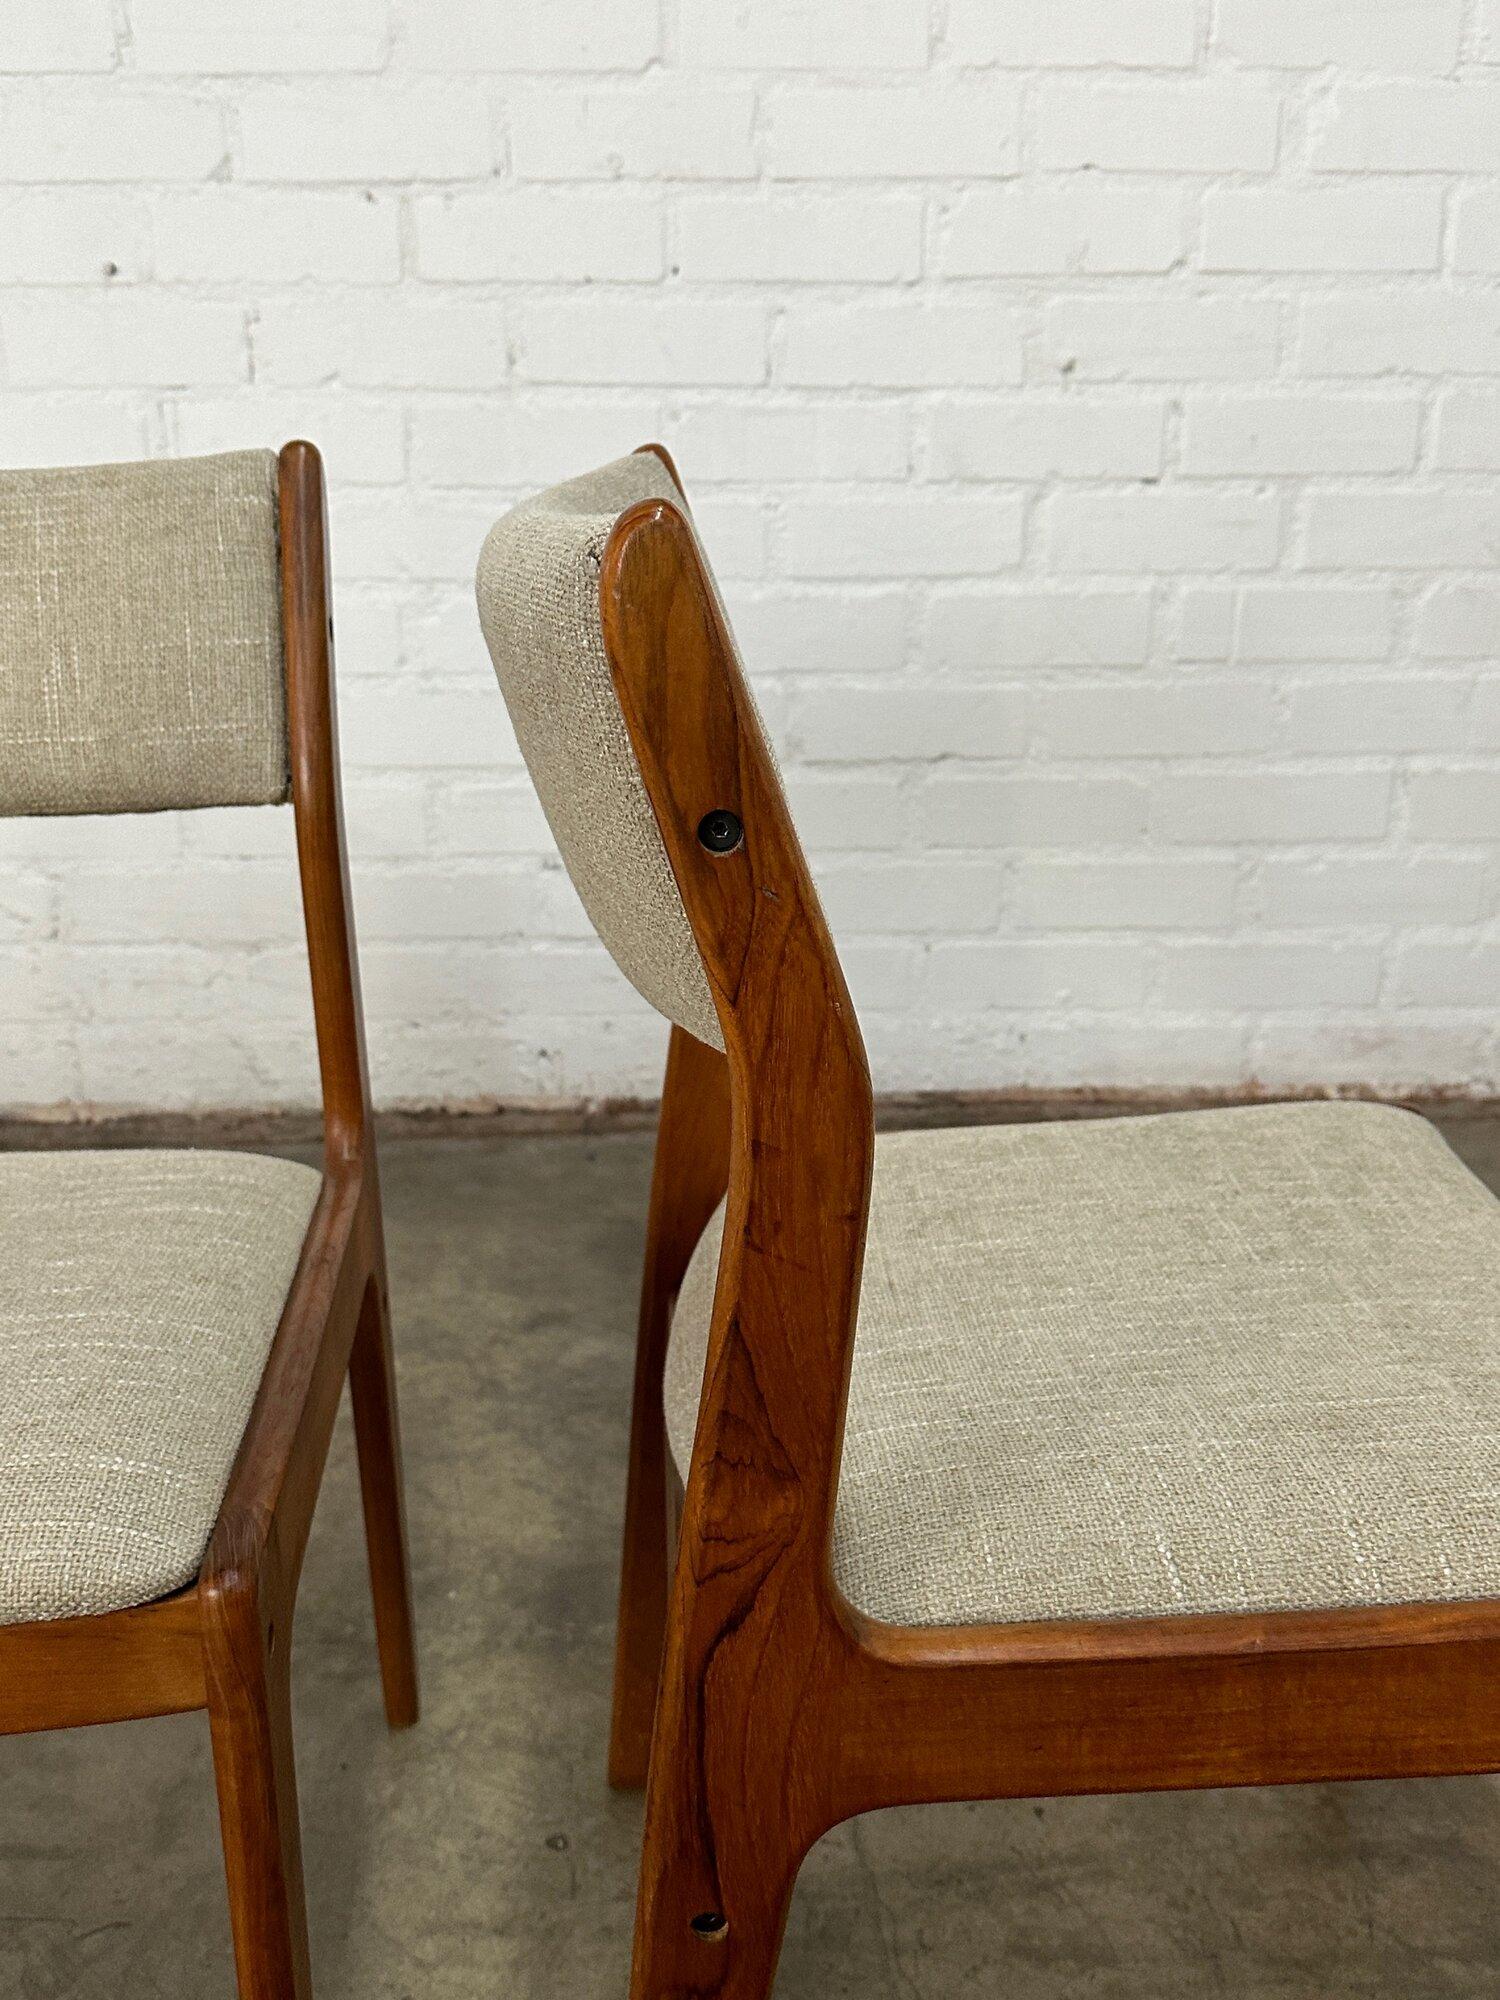 W19.5 D18 H32.5 SW17.5 SD17 SH17

Dänische Teakholz-Dining-Stühle in gutem Vintage-Zustand. Die Stühle sind neu gepolstert und die massiven Teakholzrahmen wurden gereinigt und geölt. 

Der Preis gilt für das Viererset.